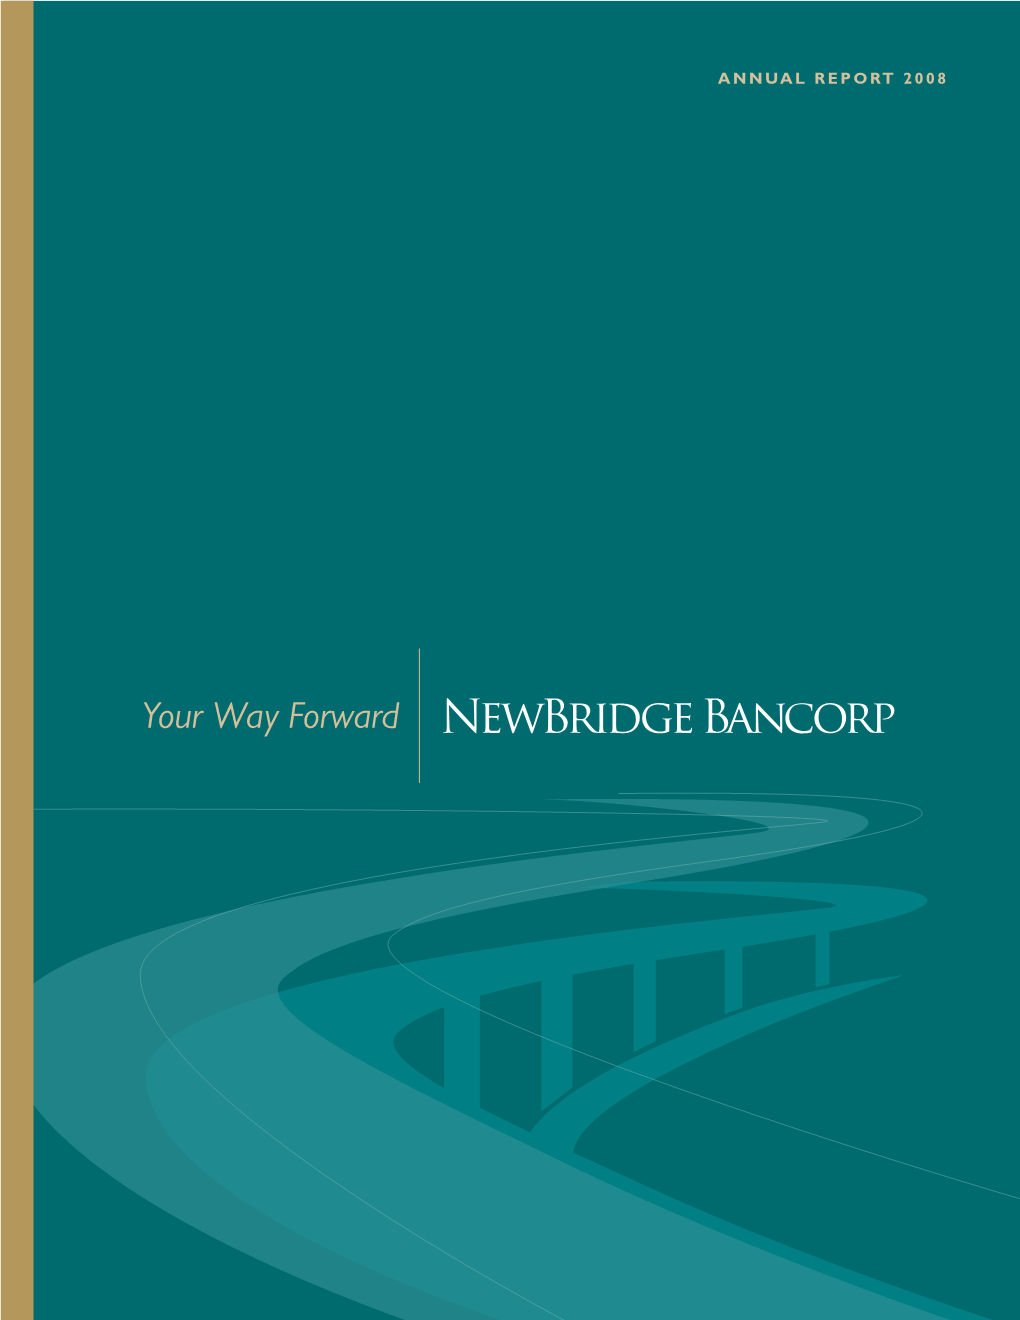 Your Way Forward Newbridge Bancorp Dear Shareholder